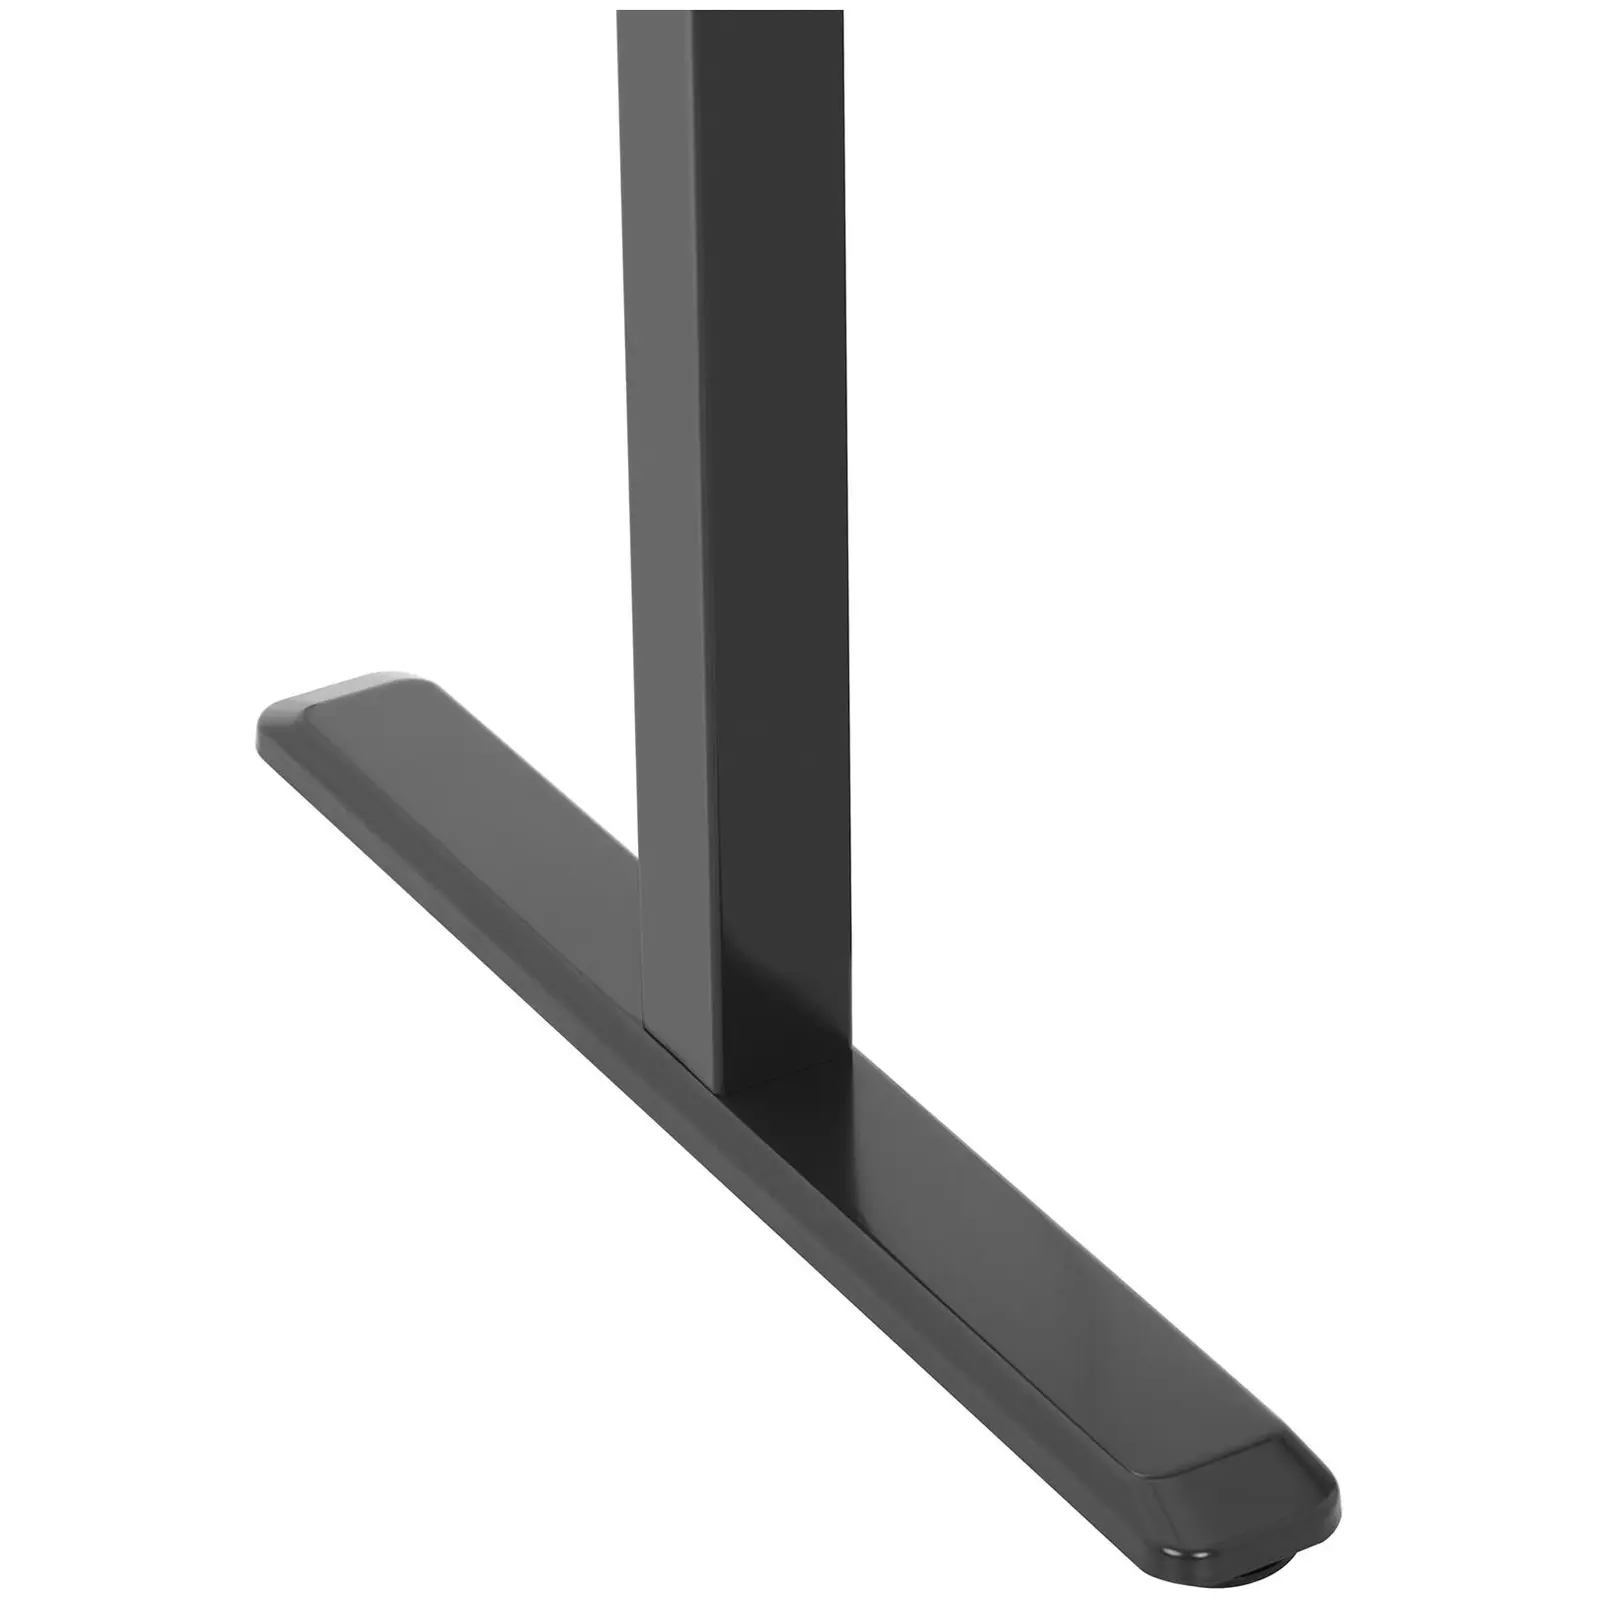 Supporto scrivania regolabile in altezza - manuale - 70 kg - nero